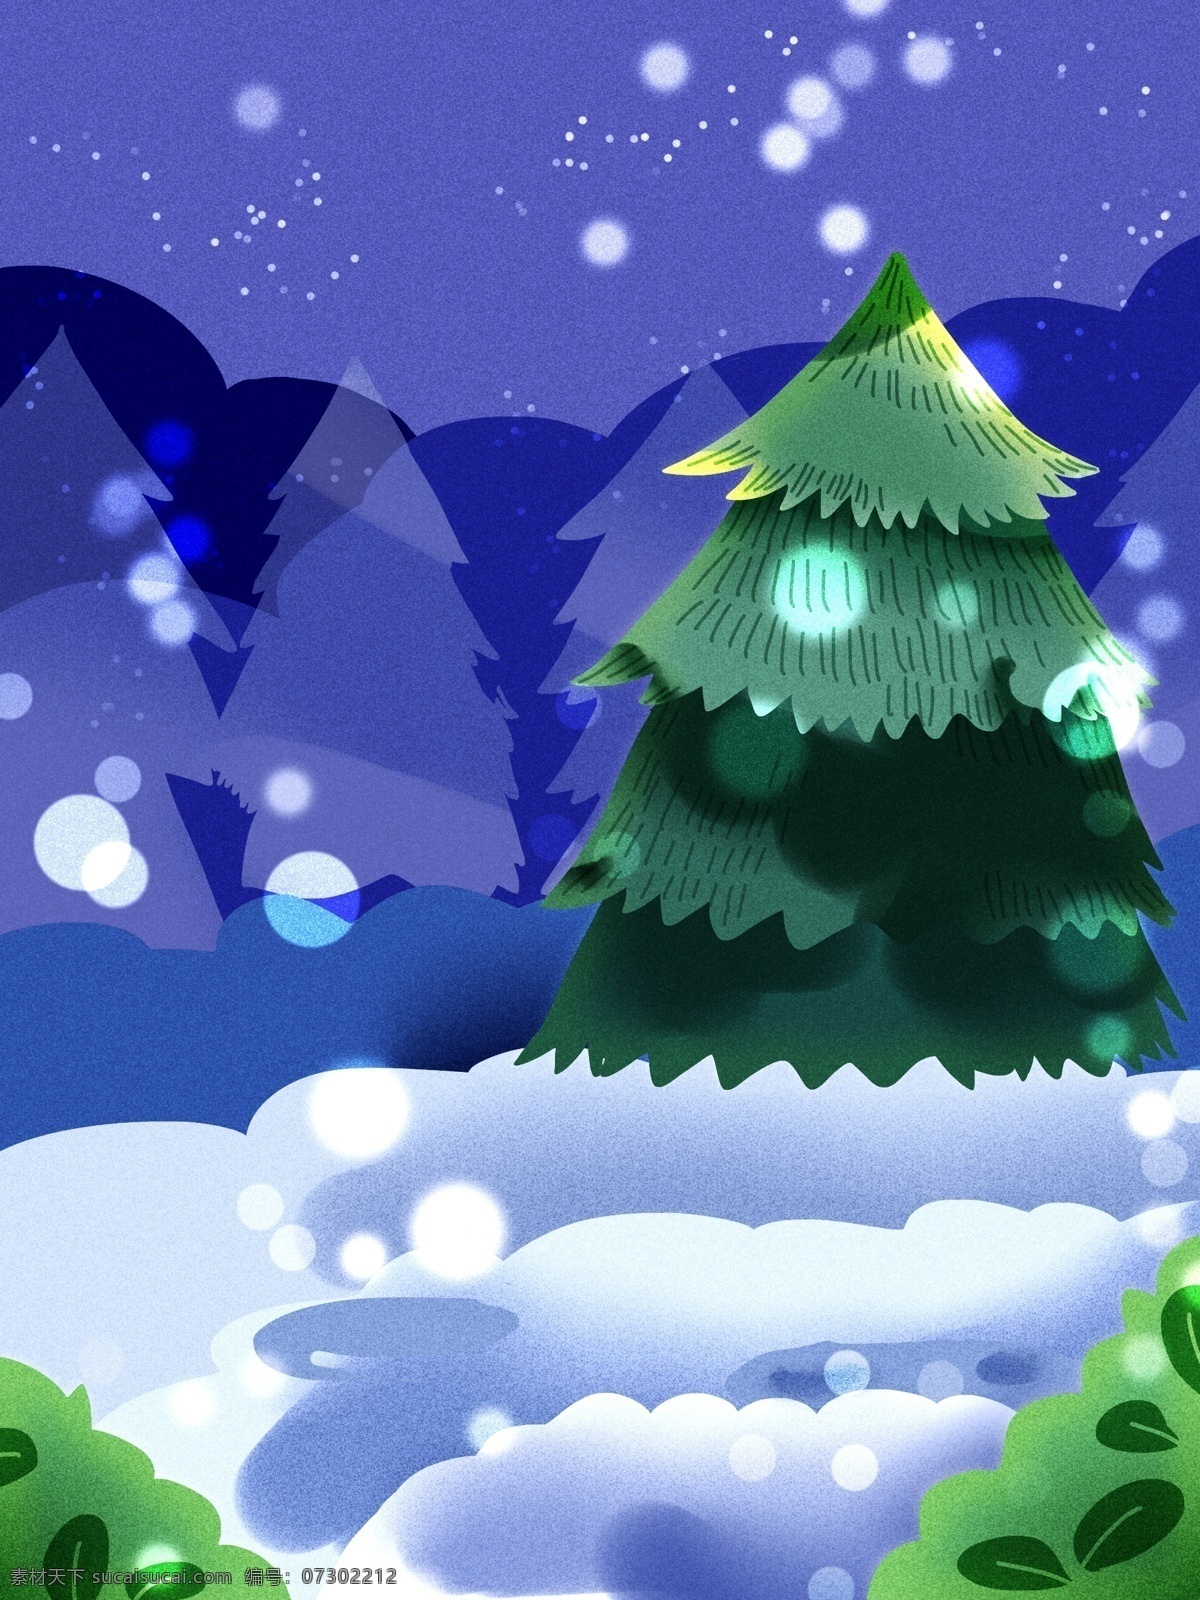 圣诞节 手绘 森林 雪景 背景 雪花 圣诞老人 背景素材 圣诞节背景 平安夜背景 圣诞背景 平安夜 节日背景 广告背景